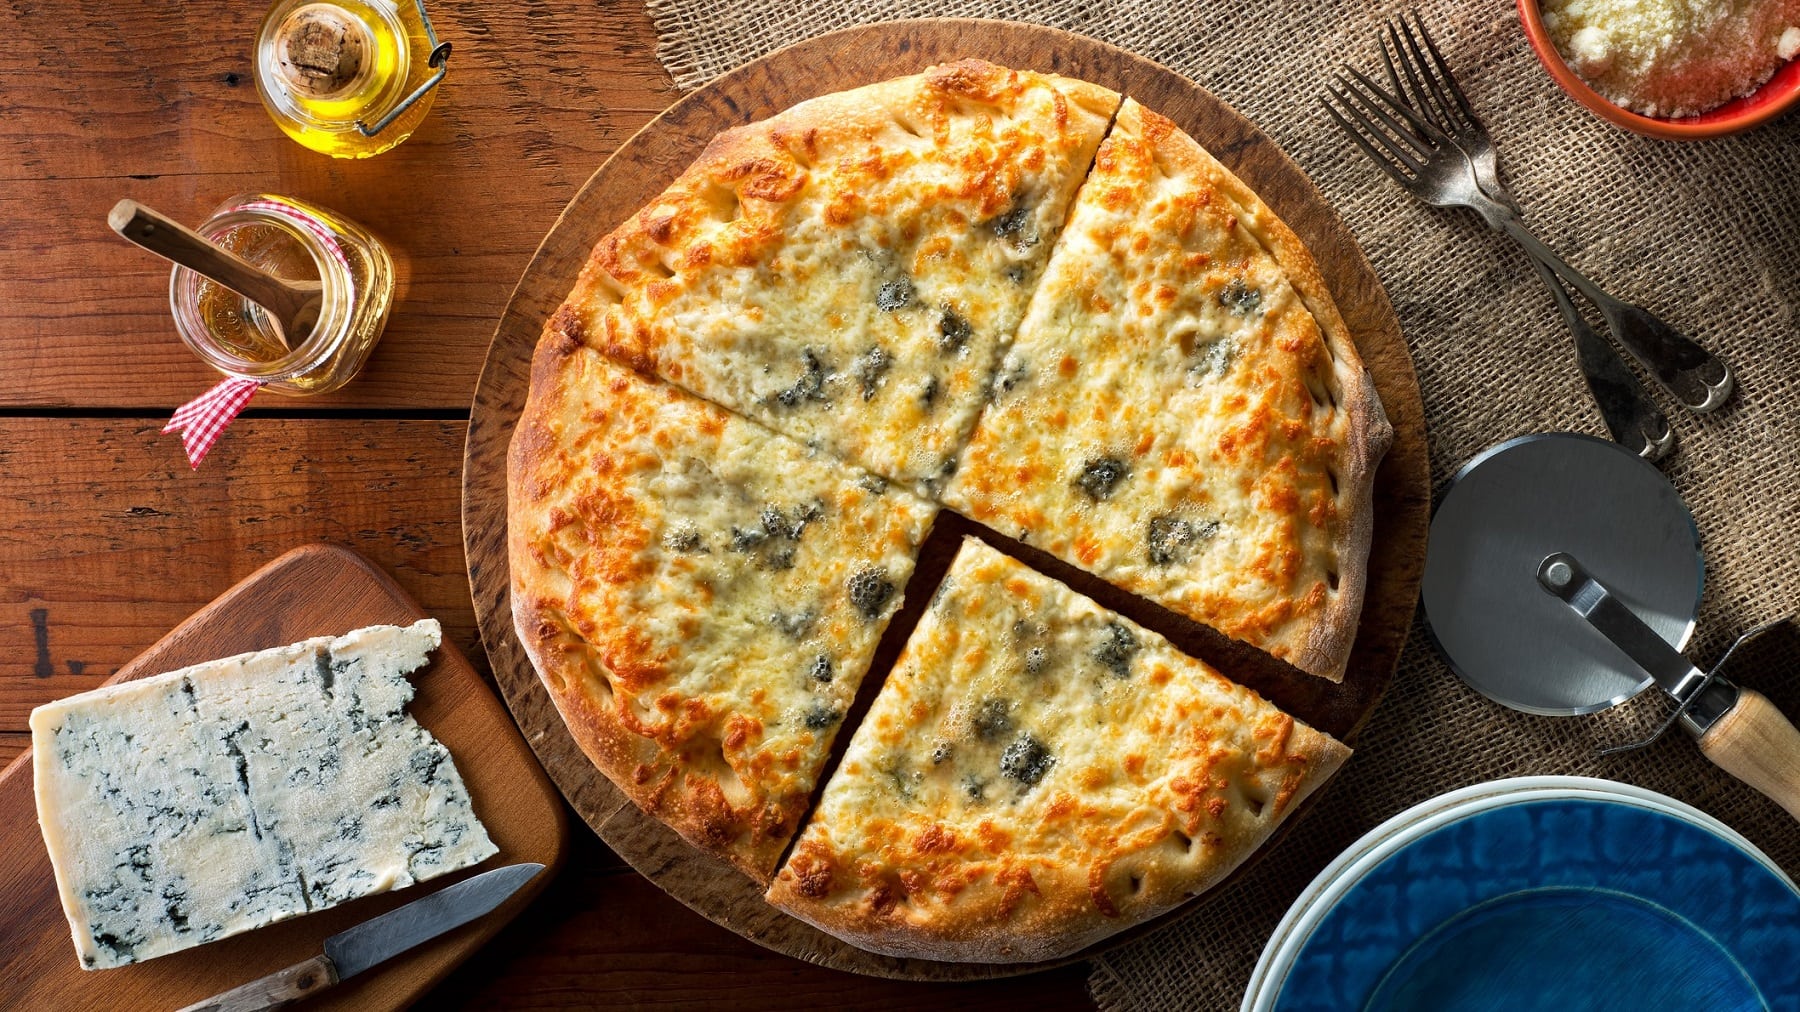 Pizza Gorgonzola mit Honig auf einem Holzbrett. Daneben stehen verschiedene Zutaten und Küchenutensilien. Das Ganze auf einem hölzernen Untergrund.